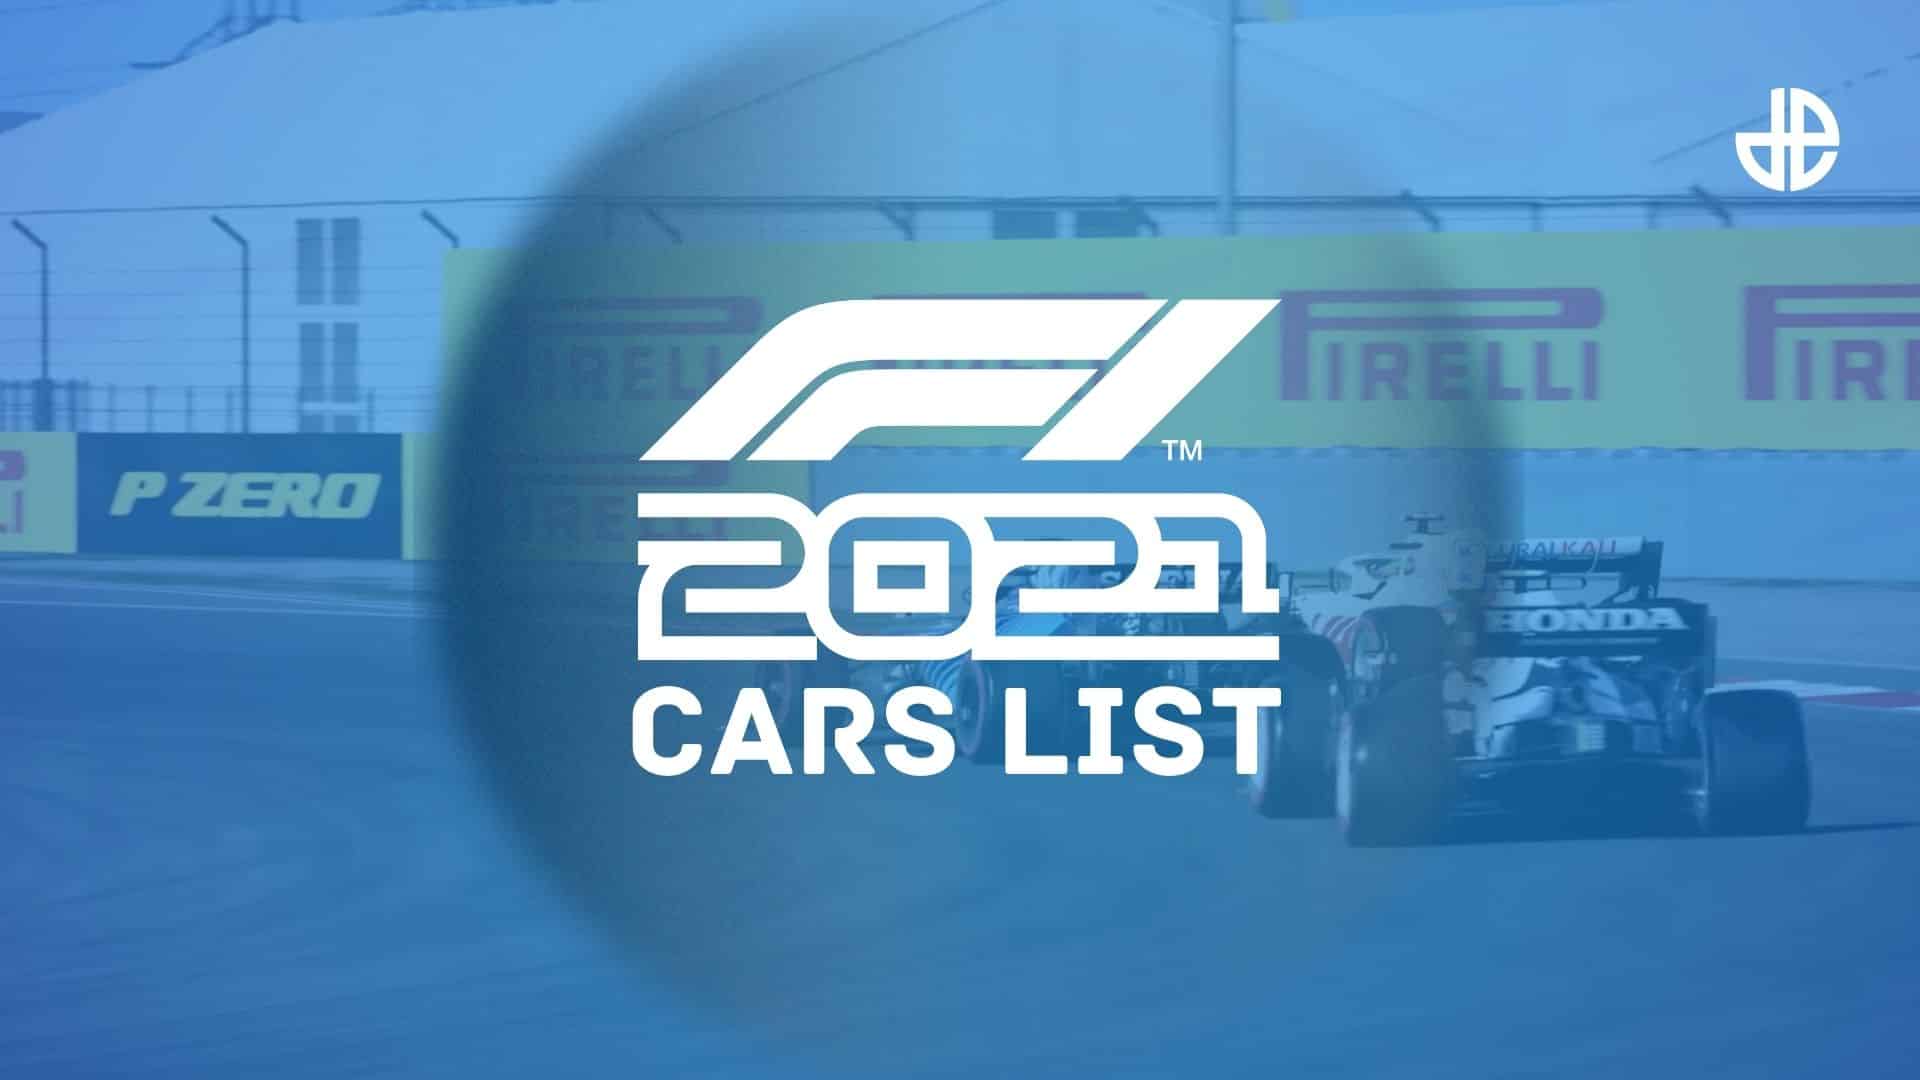 f1 2021 cars list image